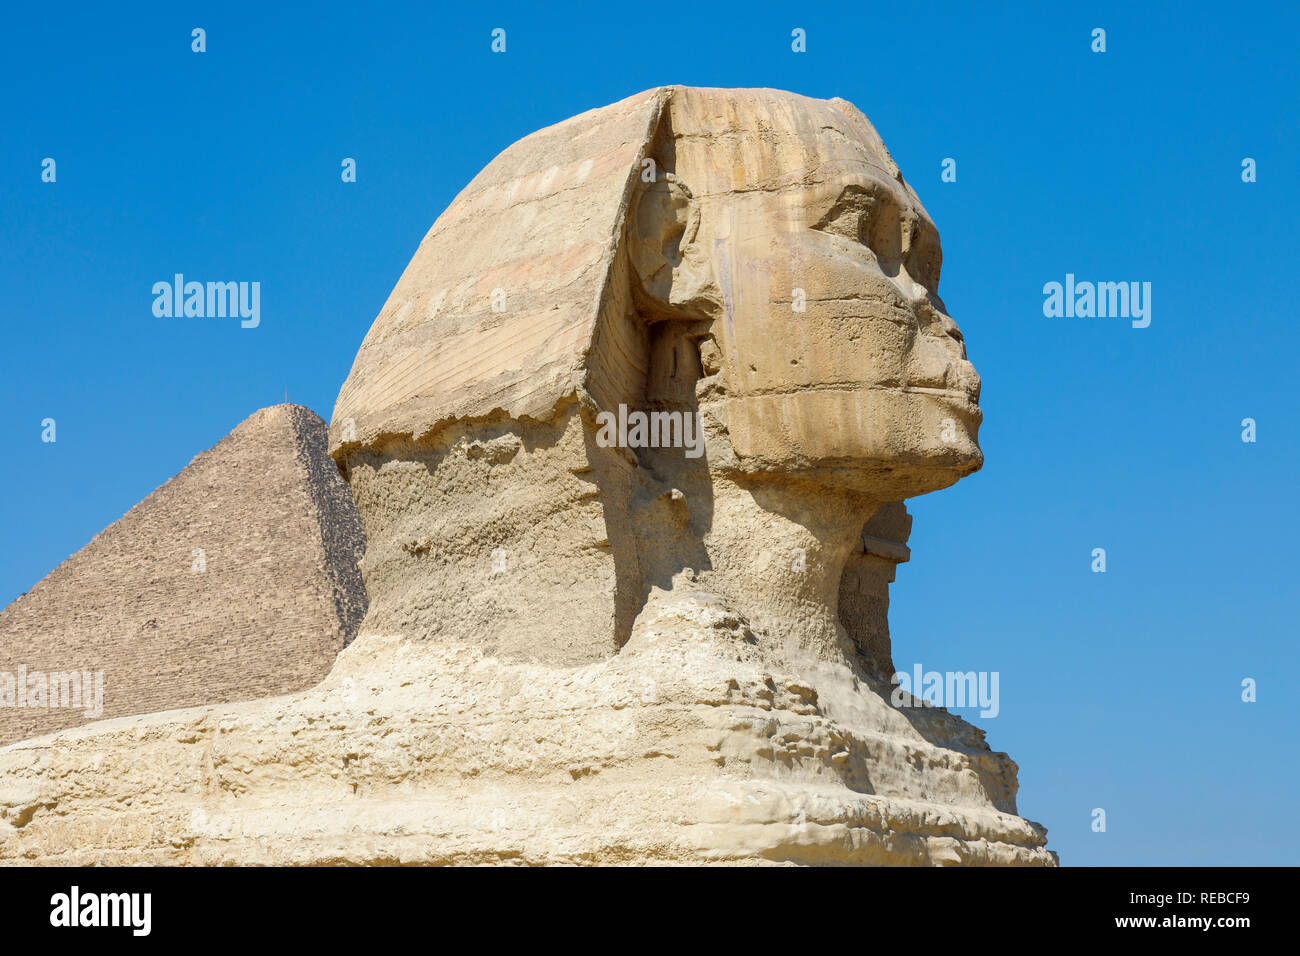 Seitenansicht der große Kopf der legendären monumentale Skulptur, die Große Sphinx von Gizeh, Giza Plateau, Kairo, Ägypten gegen einen klaren blauen Himmel Stockfoto